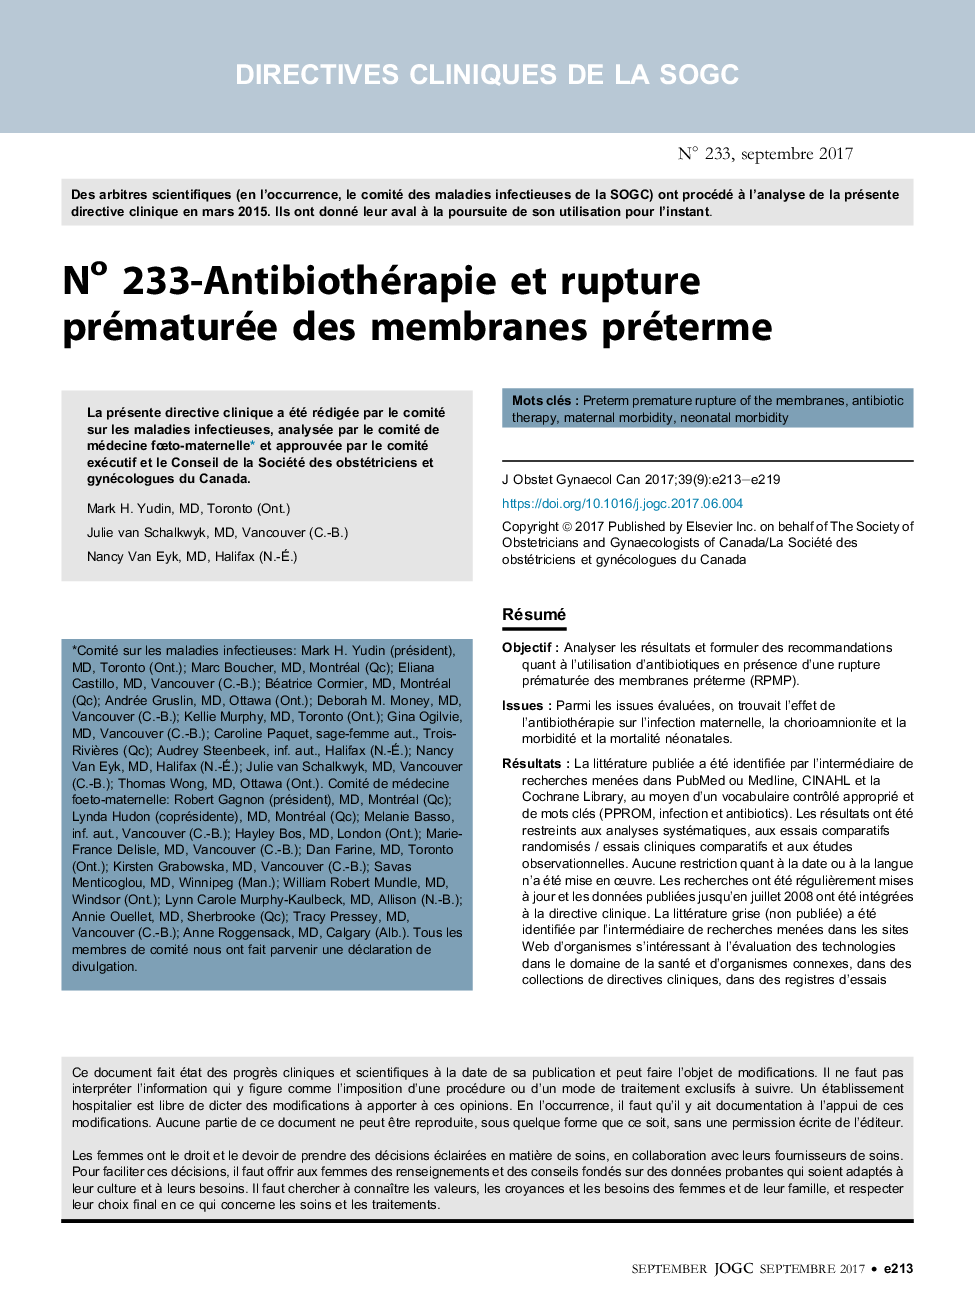 No 233-Antibiothérapie et rupture prématurée des membranes préterme